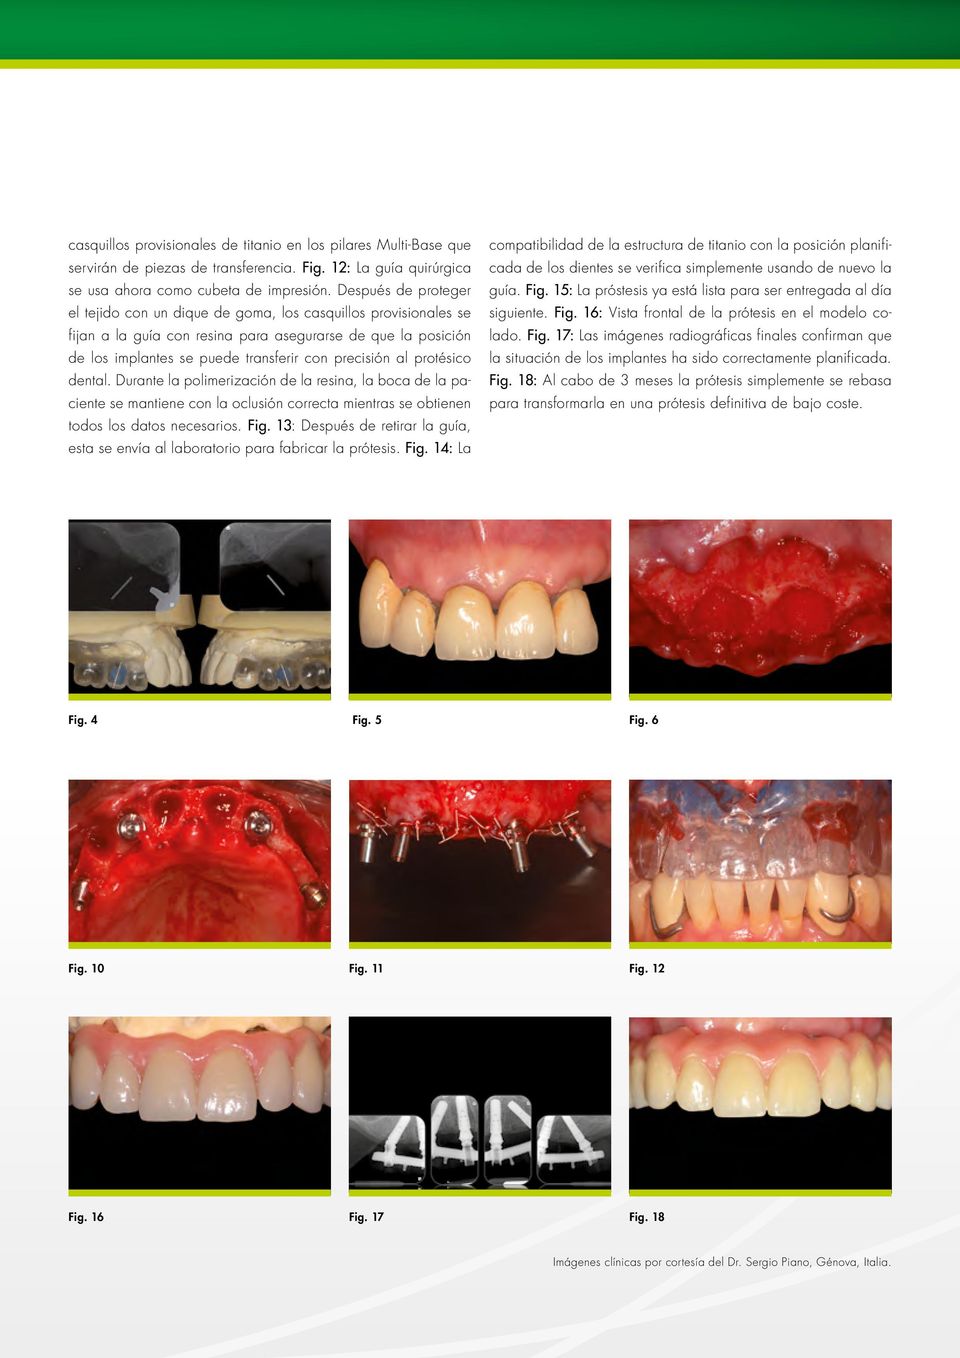 protésico dental. Durante la polimerización de la resina, la boca de la paciente se mantiene con la oclusión correcta mientras se obtienen todos los datos necesarios. Fig.